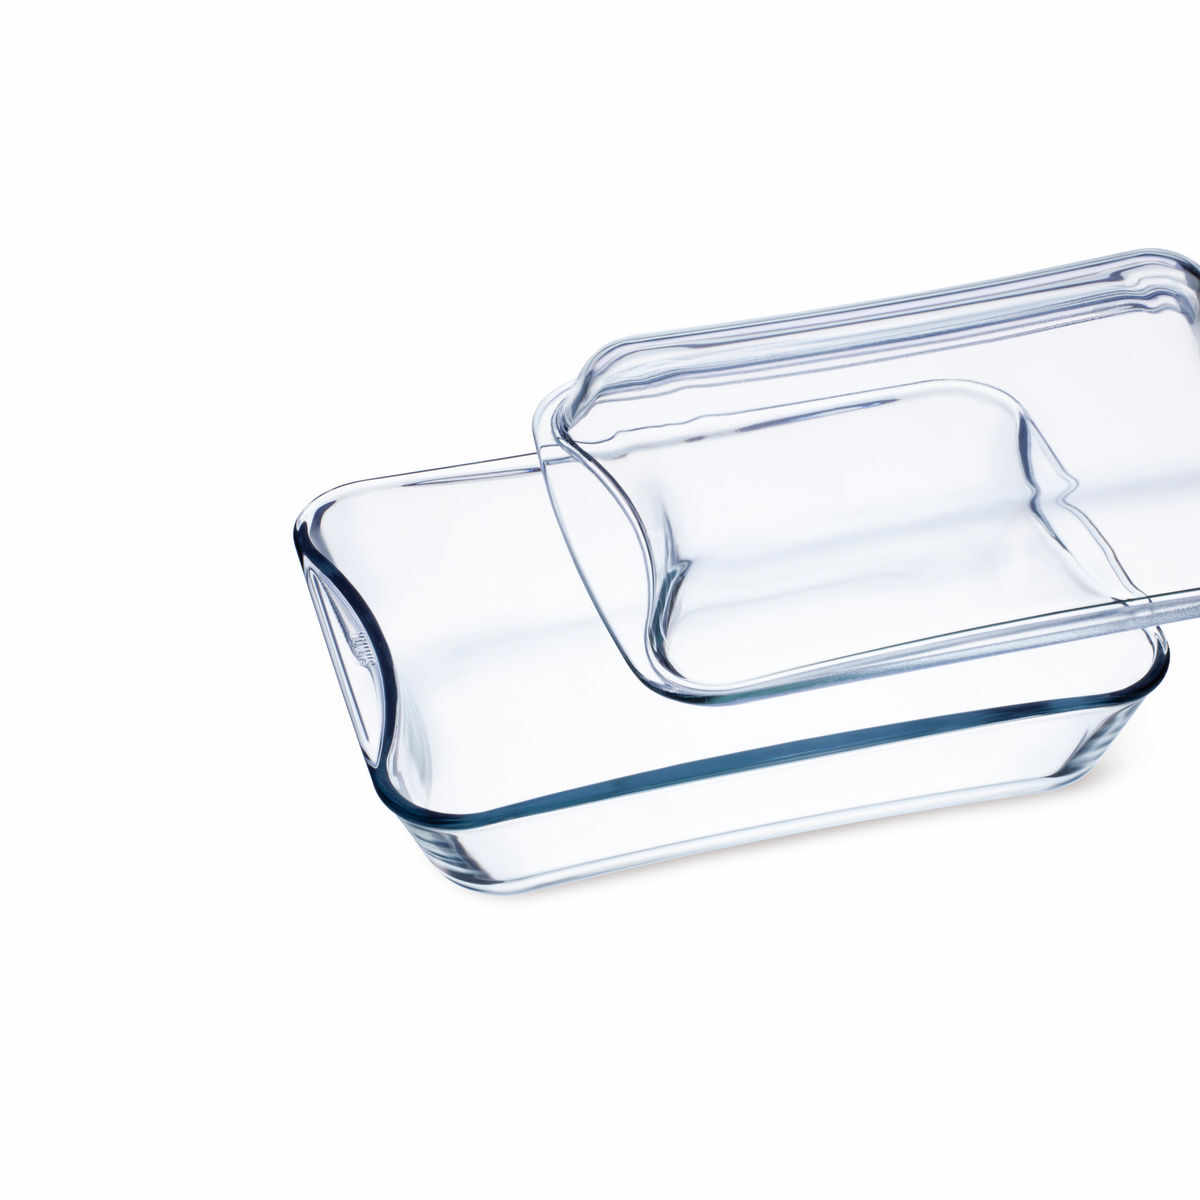 EXCLUSIVE Vas sticla termorezistenta rectangular cu capac 2.5 l